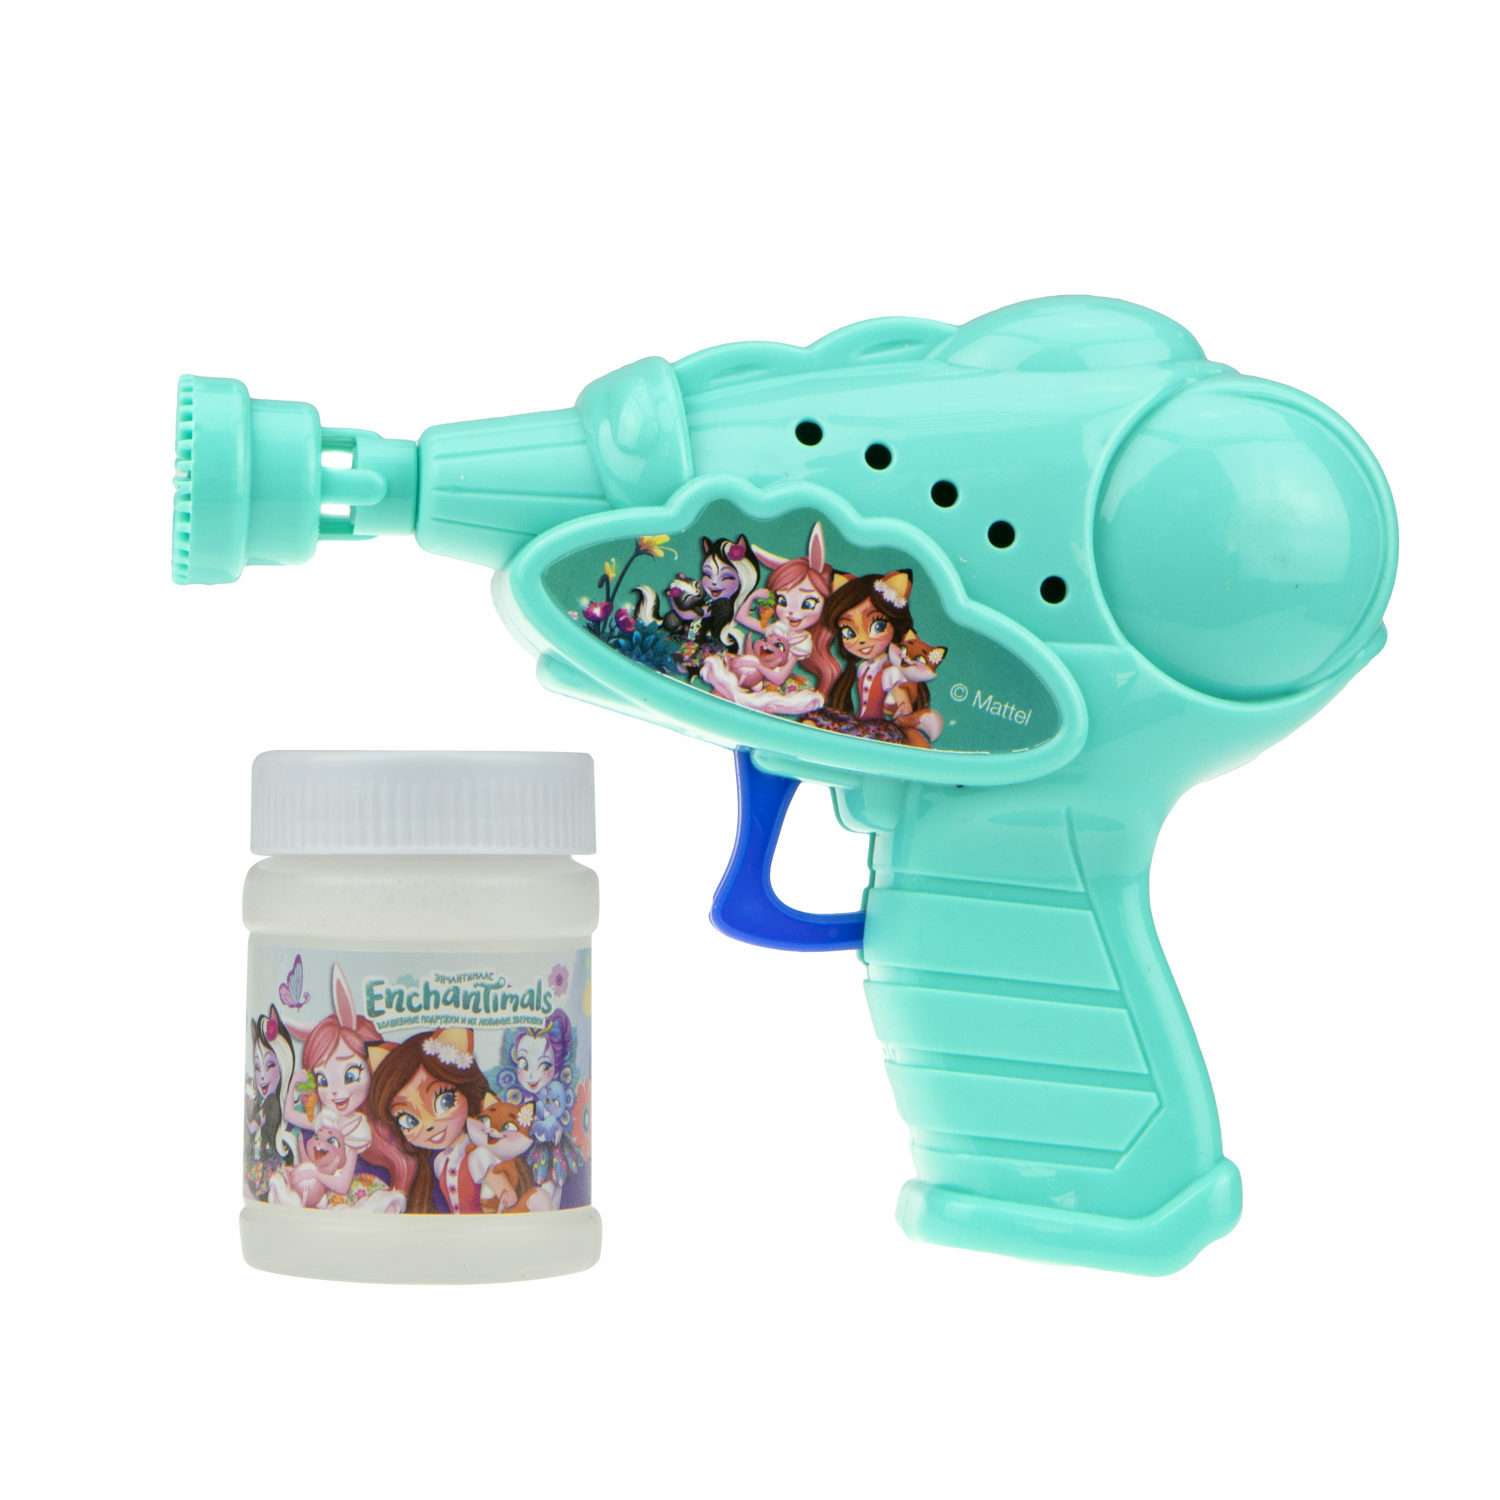 Генератор мыльных пузырей Enchantimals 1YOY с раствором пистолет бластер аппарат детские игрушки для улицы и дома для девочек - фото 1